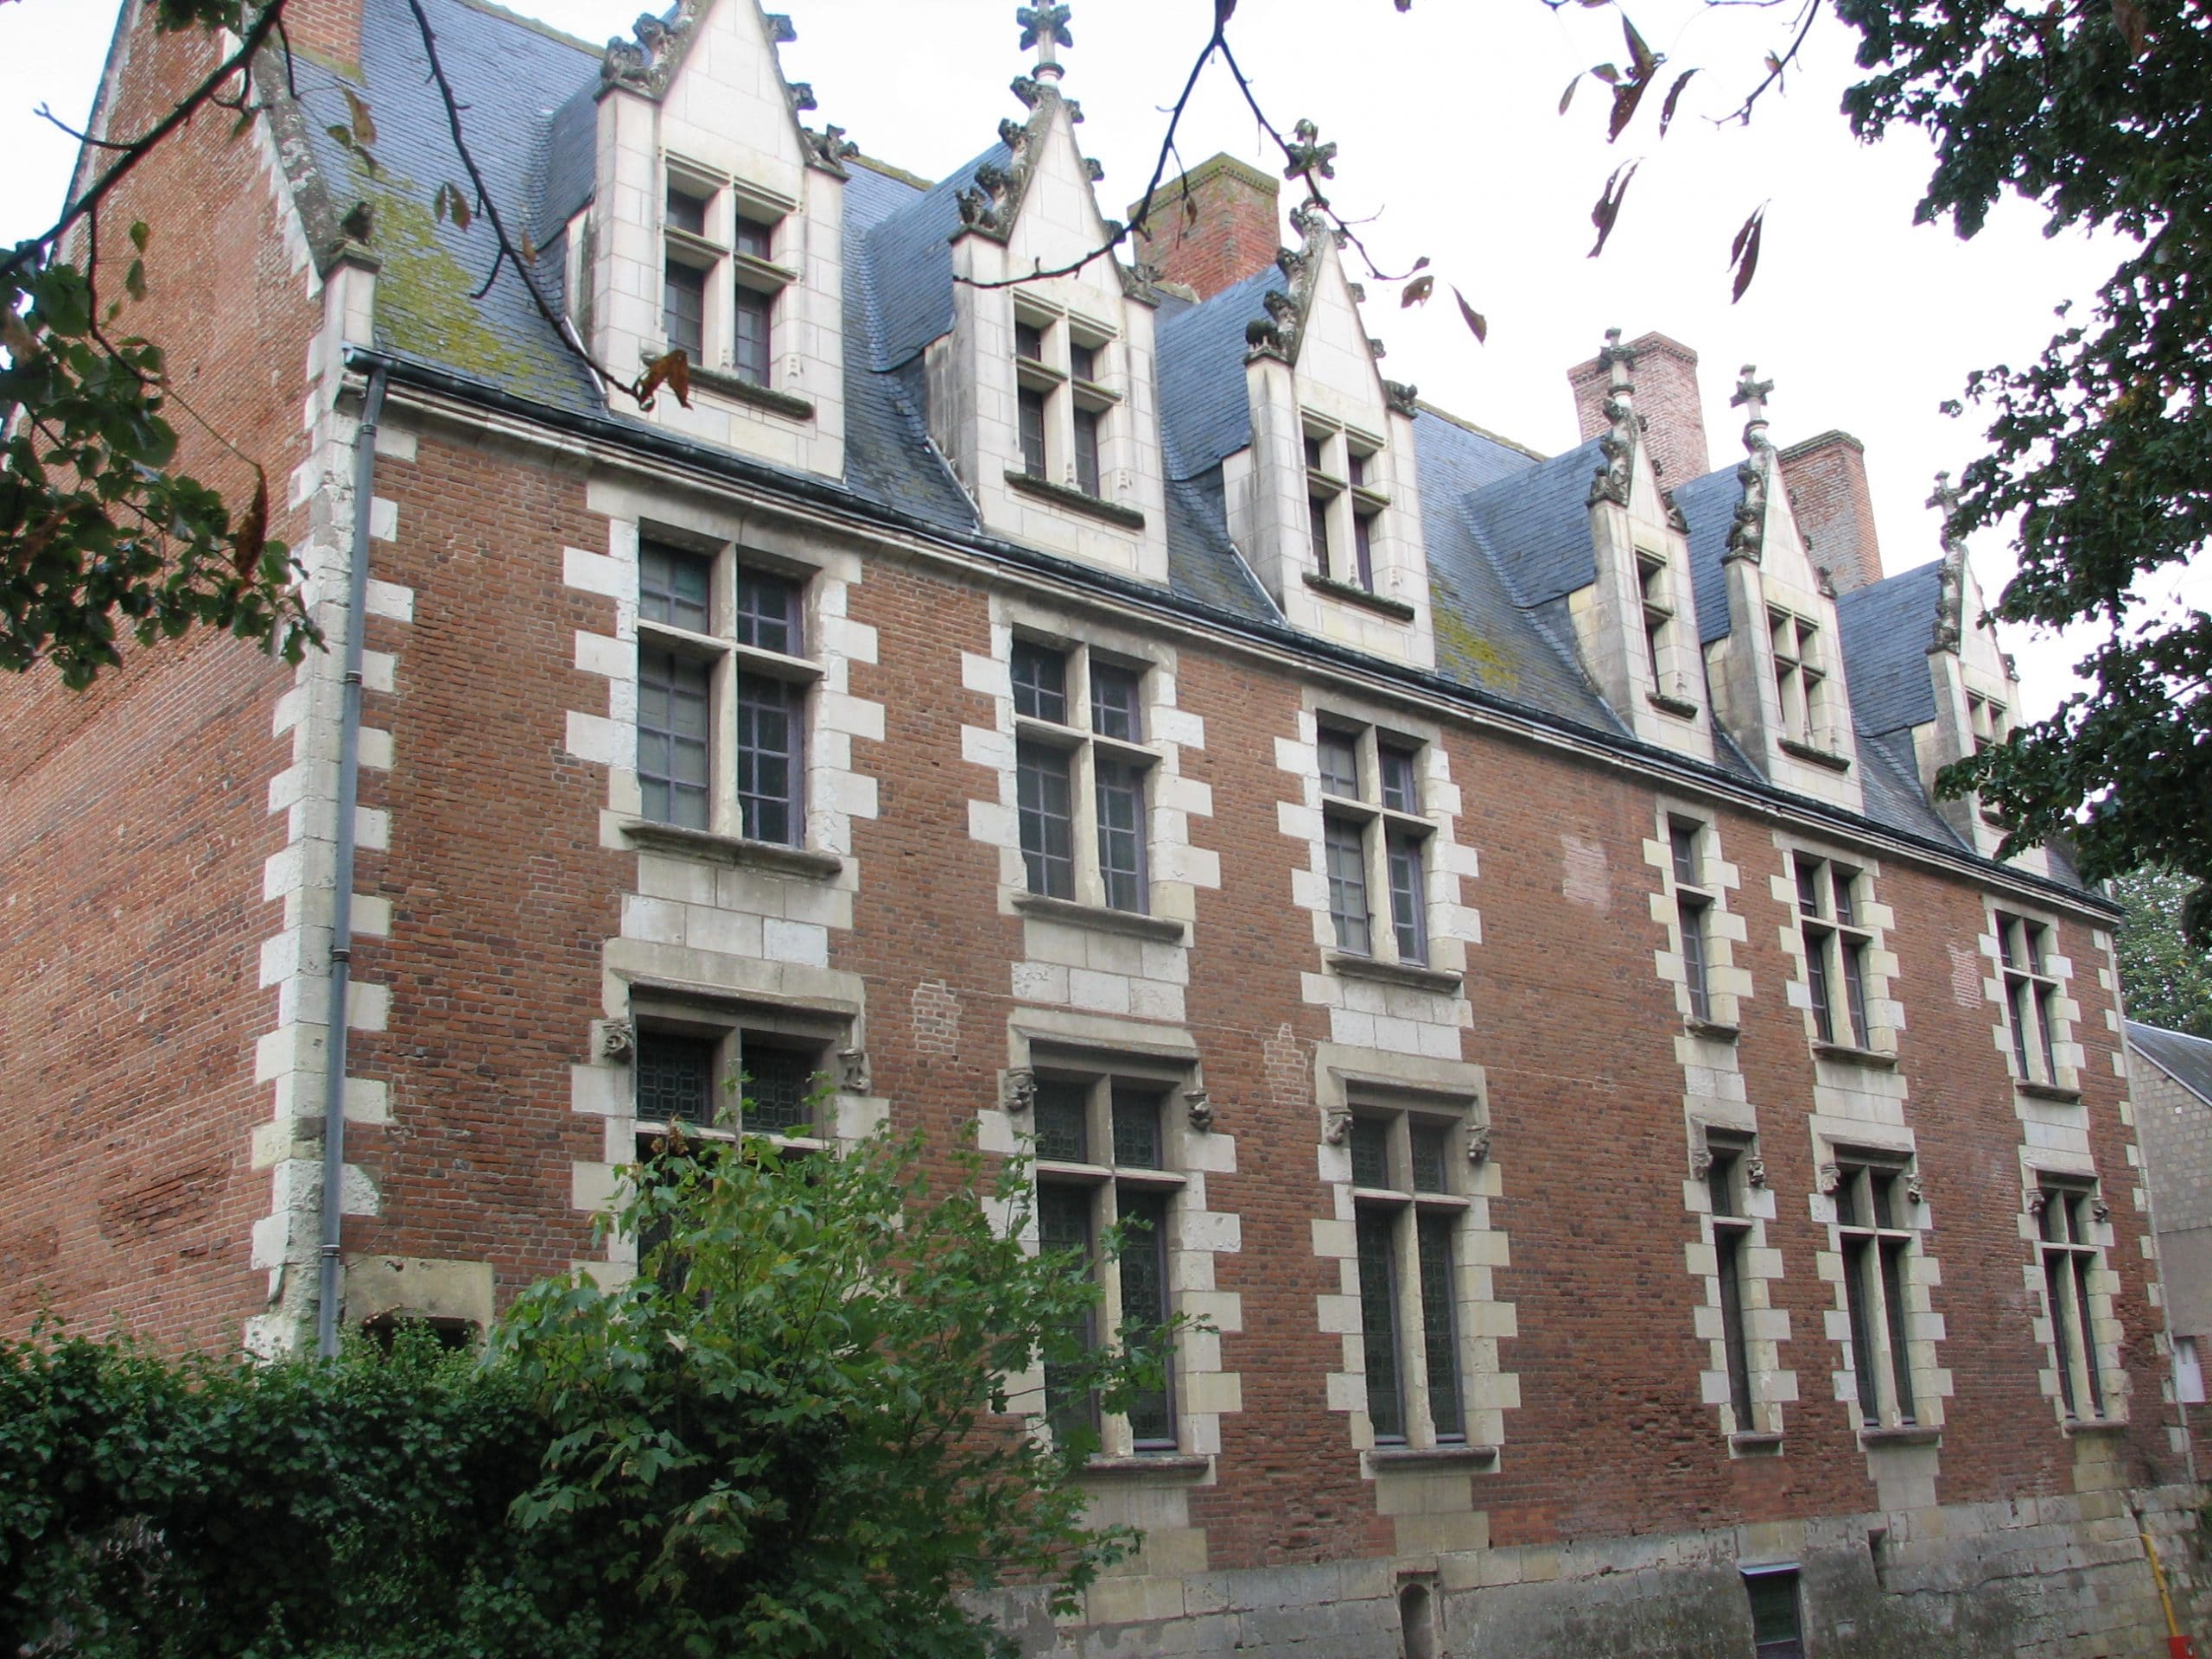 Château de Plessis-lèz-Tours